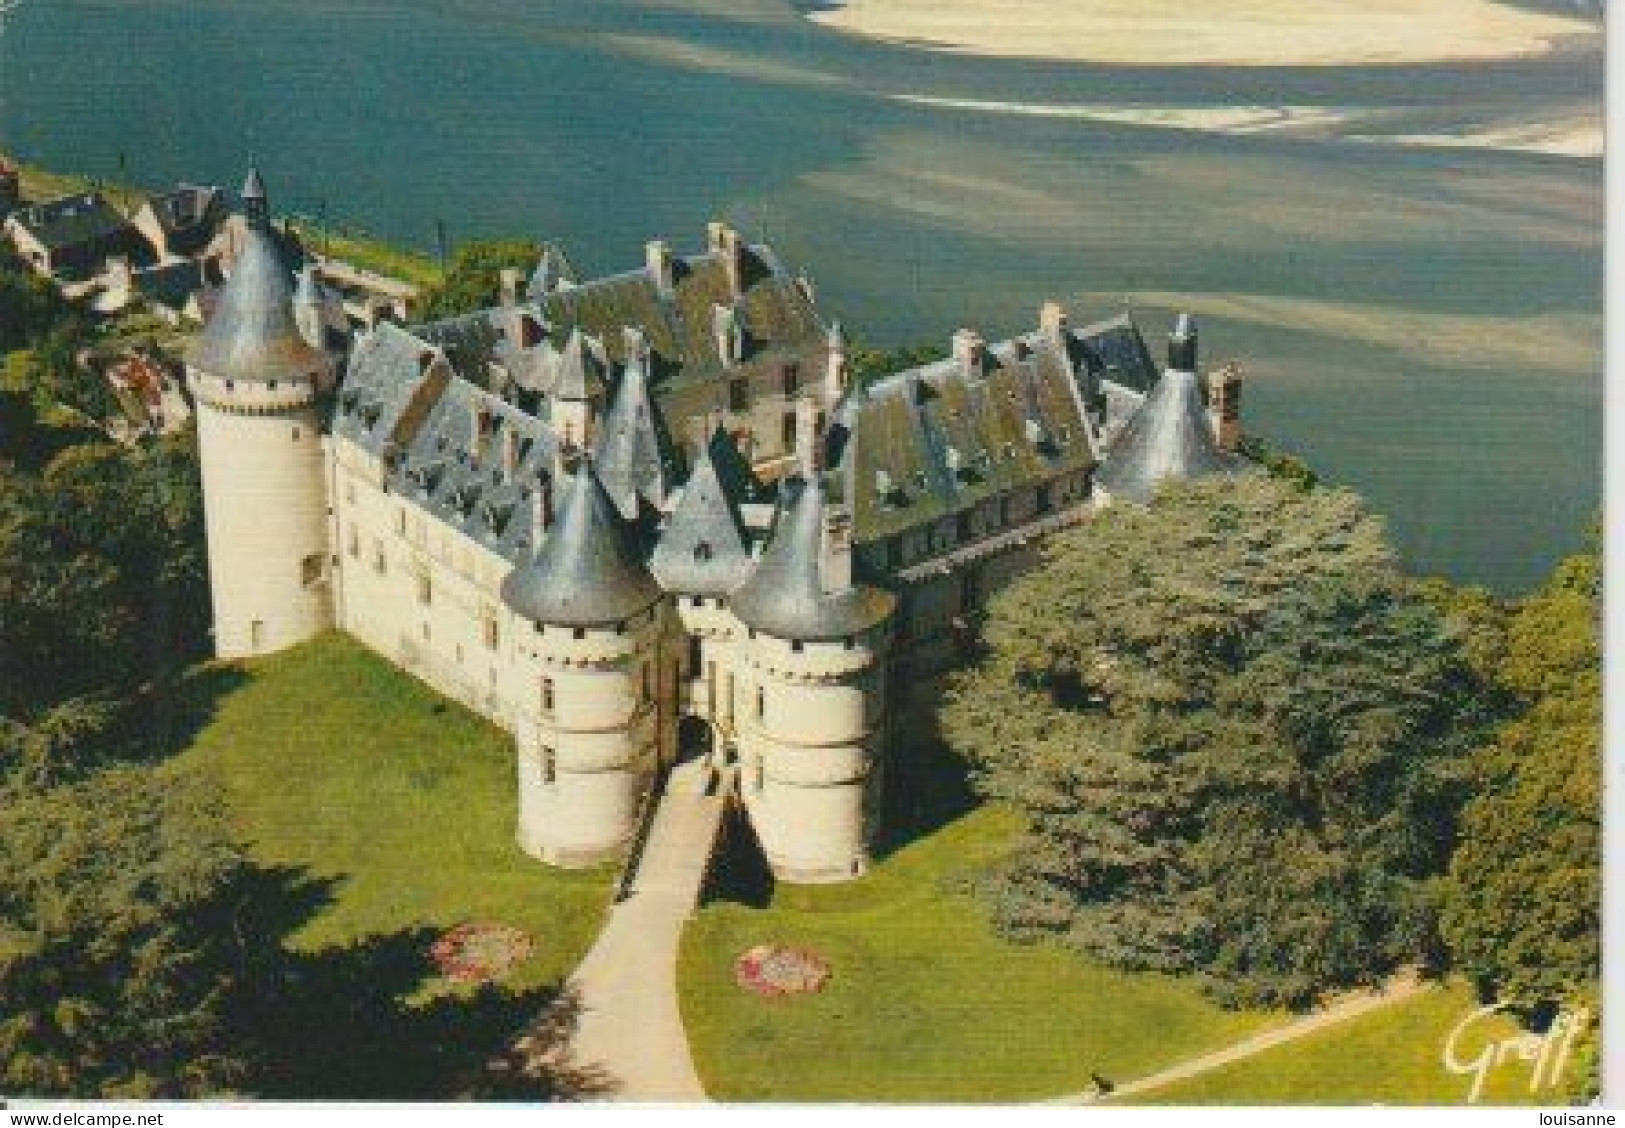 CHAUMONT (  41 )    VUE  AÉRIENNE  DE  L'ENTRÉE  DUCHÂTEAU  -  2   C P M  (24 / 3 / 158  ) - Castles